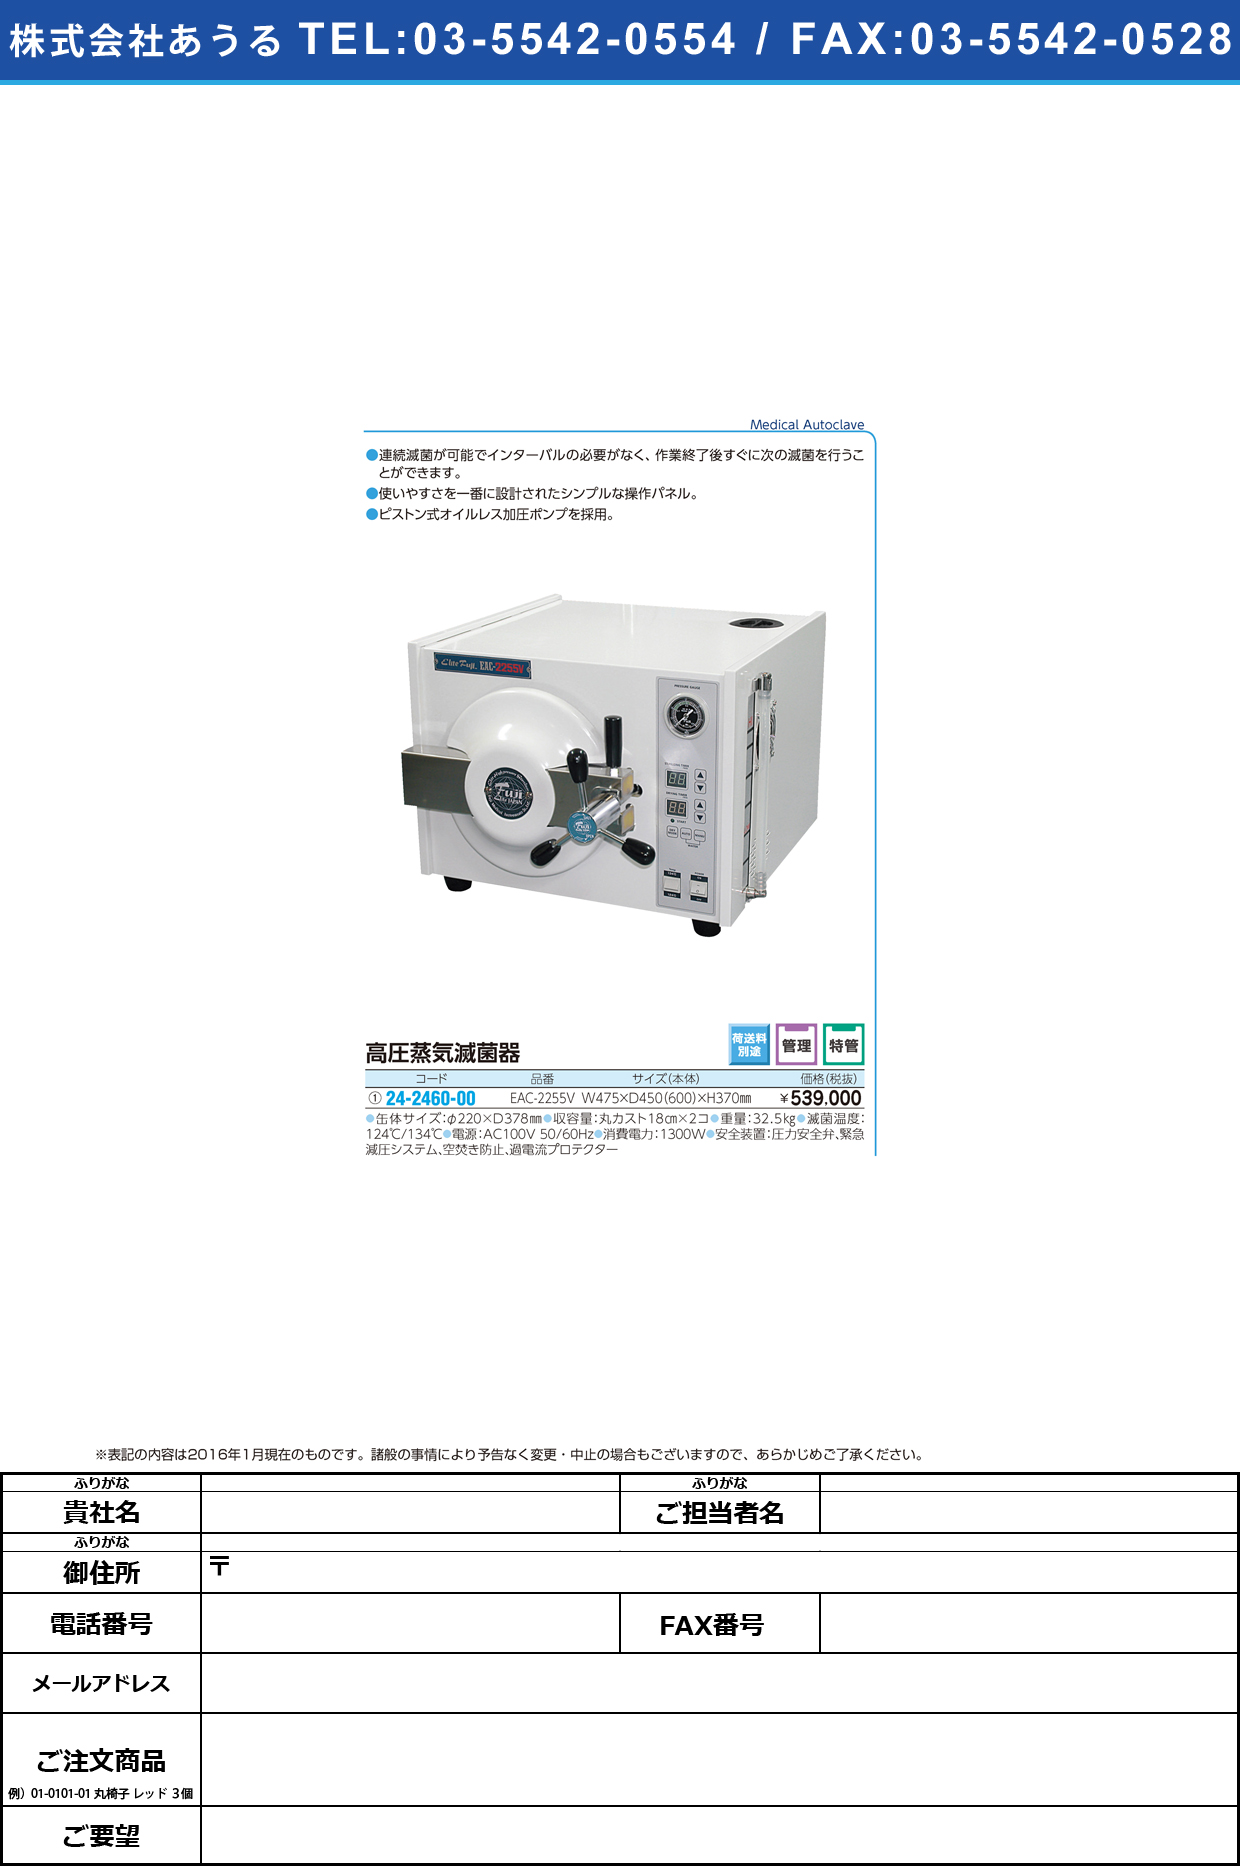 (24-2460-00)高圧蒸気滅菌器 ｺｳｱﾂｼﾞｮｳｷﾒｯｷﾝｷ EAC-2255V【1台単位】【2016年カタログ商品】